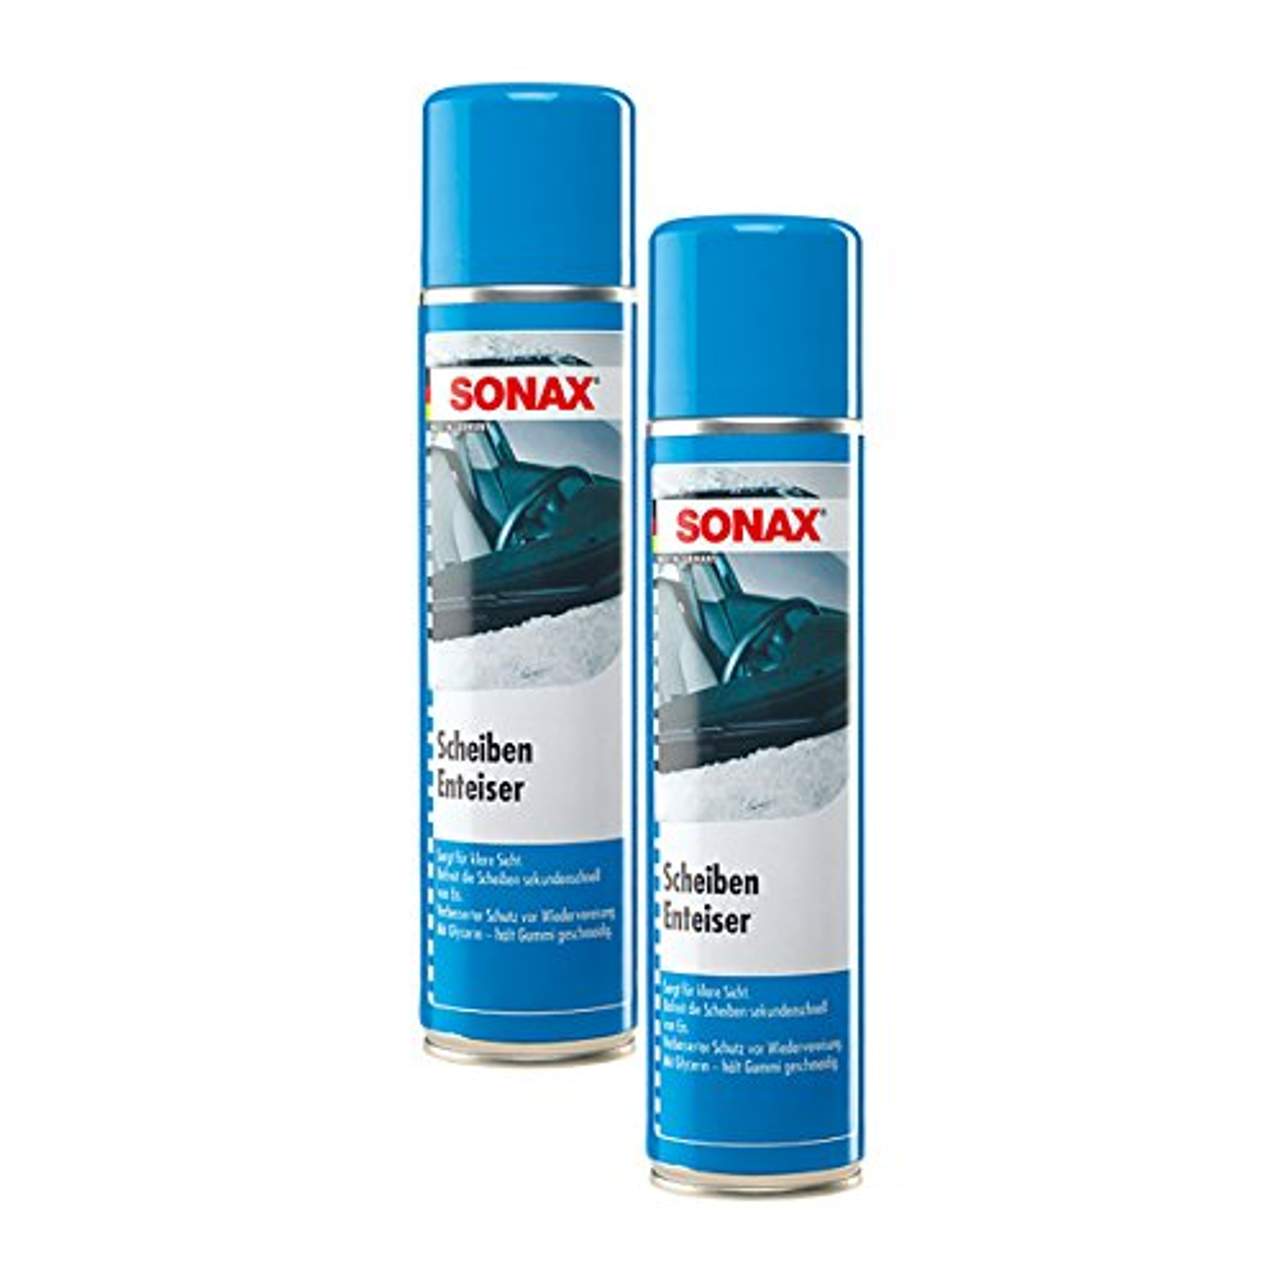 SONAX 2X 03313000 ScheibenEnteiser Eisfrei Antifrost Spray 400ml